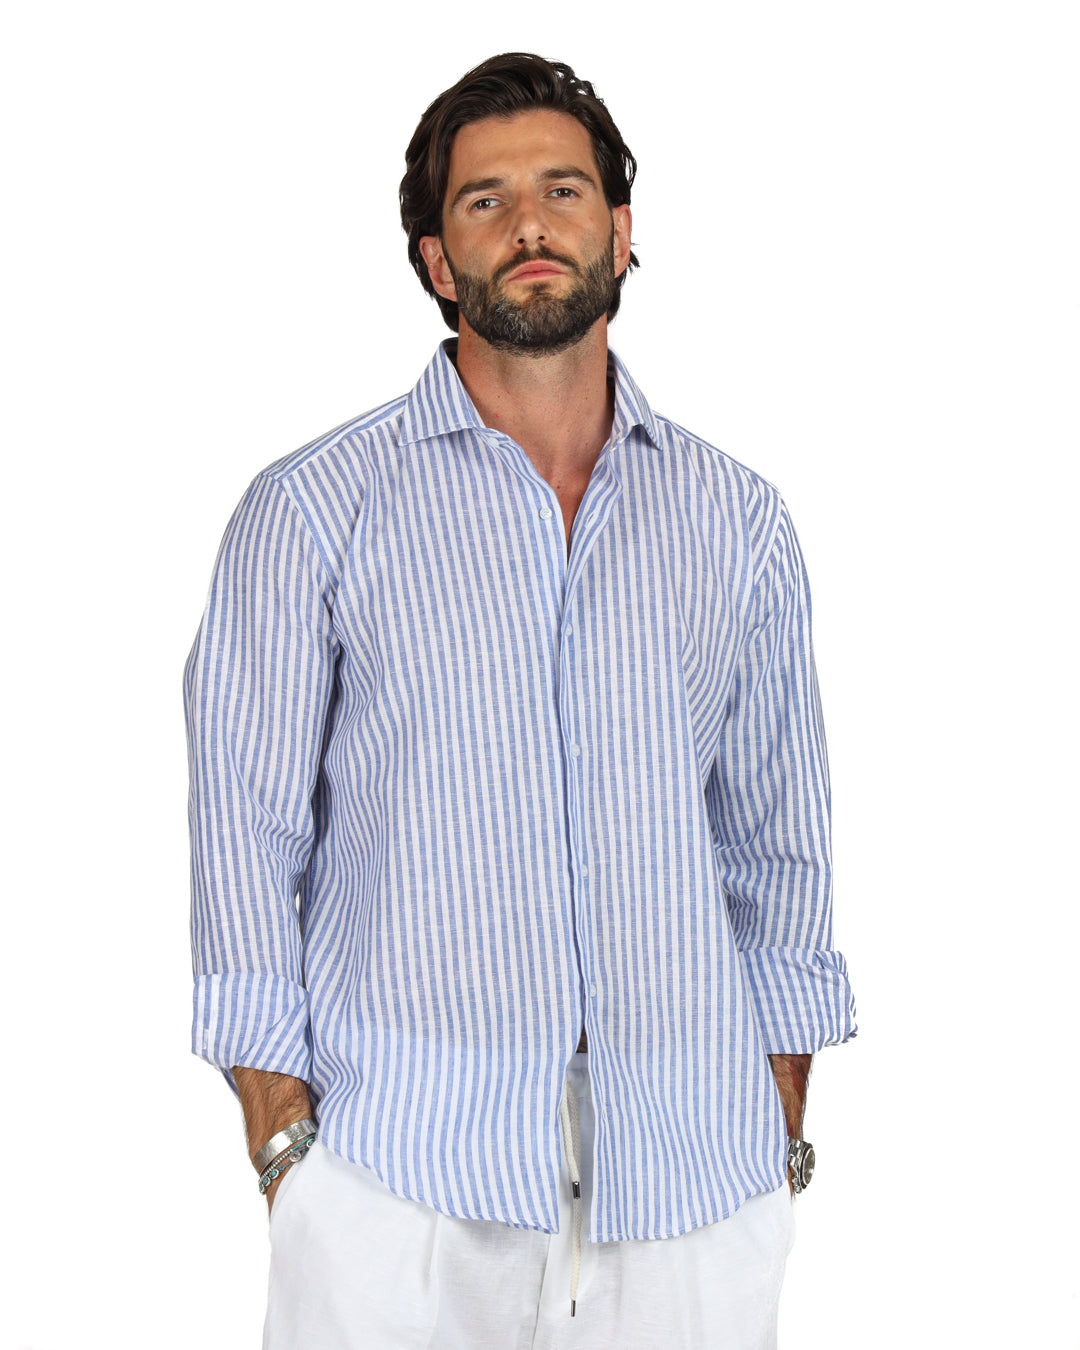 Ischia - Classic light blue narrow striped linen shirt